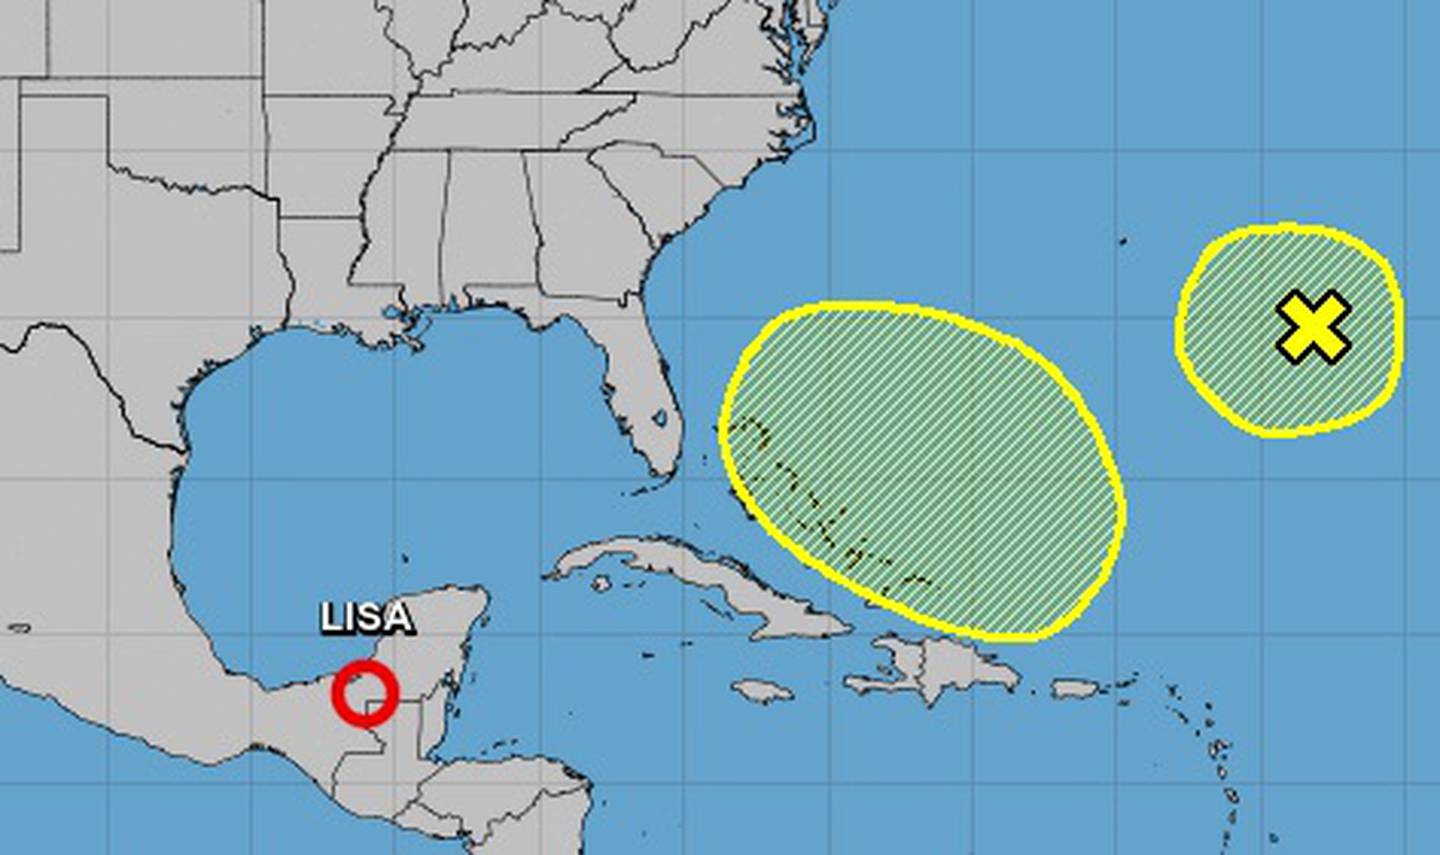 Neben Lisa und Martin überwacht das National Hurricane Center zwei Gebiete im Atlantik auf mögliche Stürme.